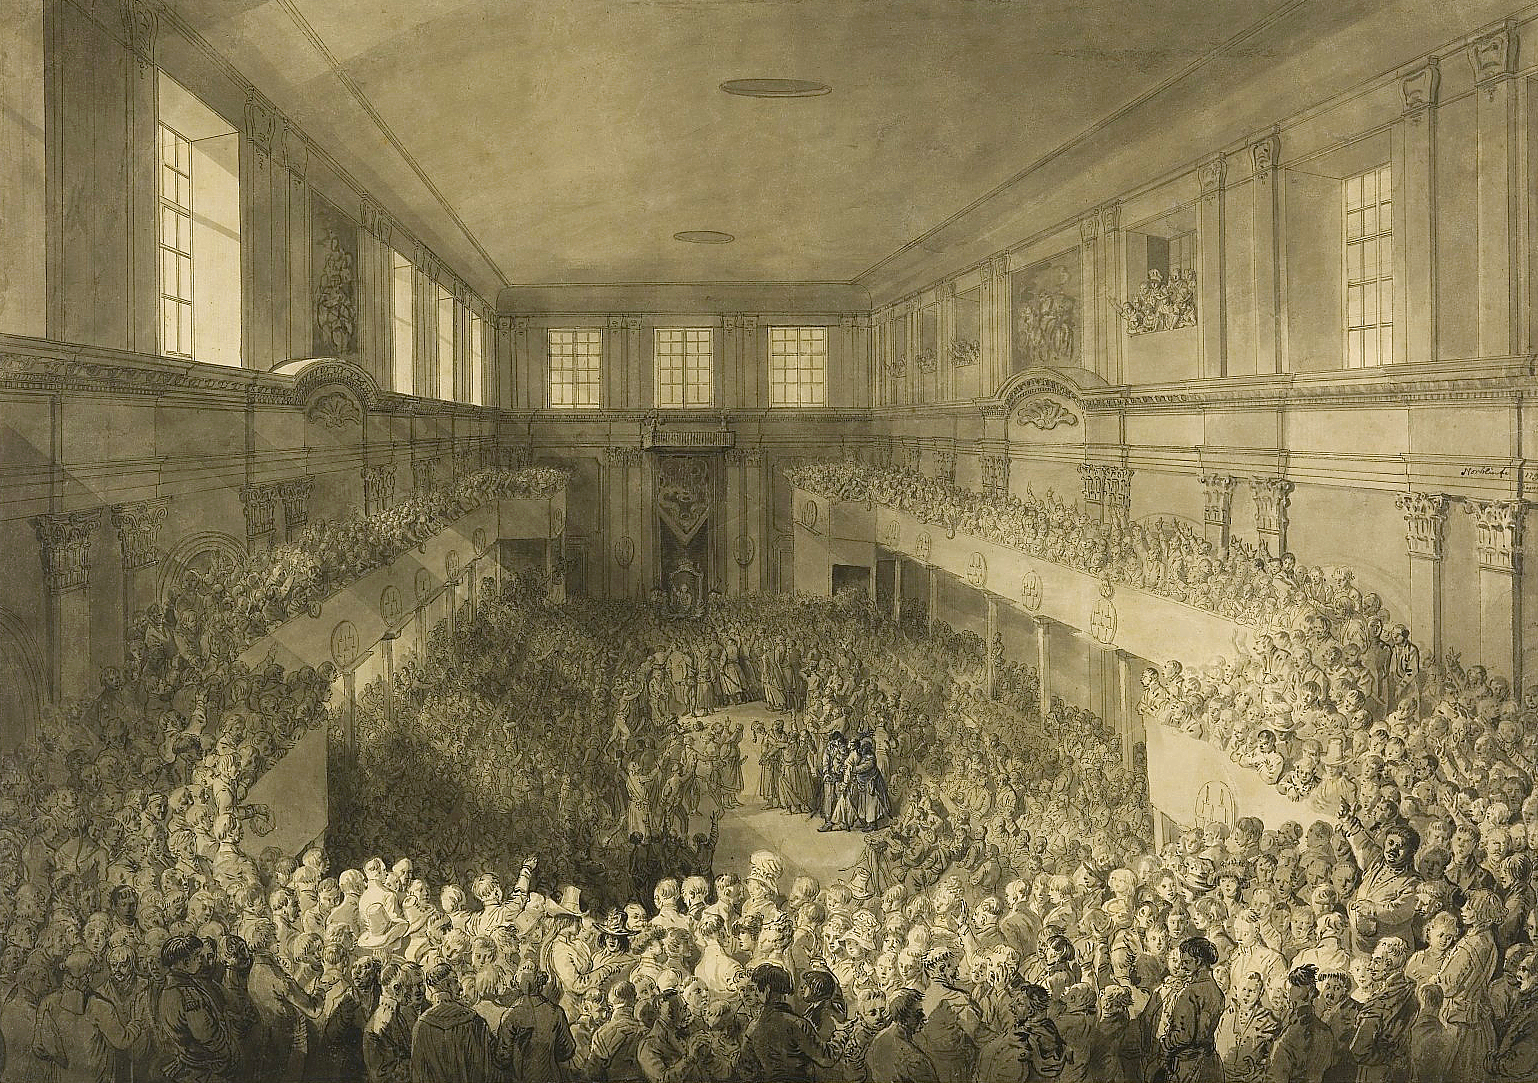 Zaprzysiężenie Konstytucji 3 maja w Sali Senatorskiej na Zamku Królewskim w Warszawie, rysunek Jana Piotra Norblina